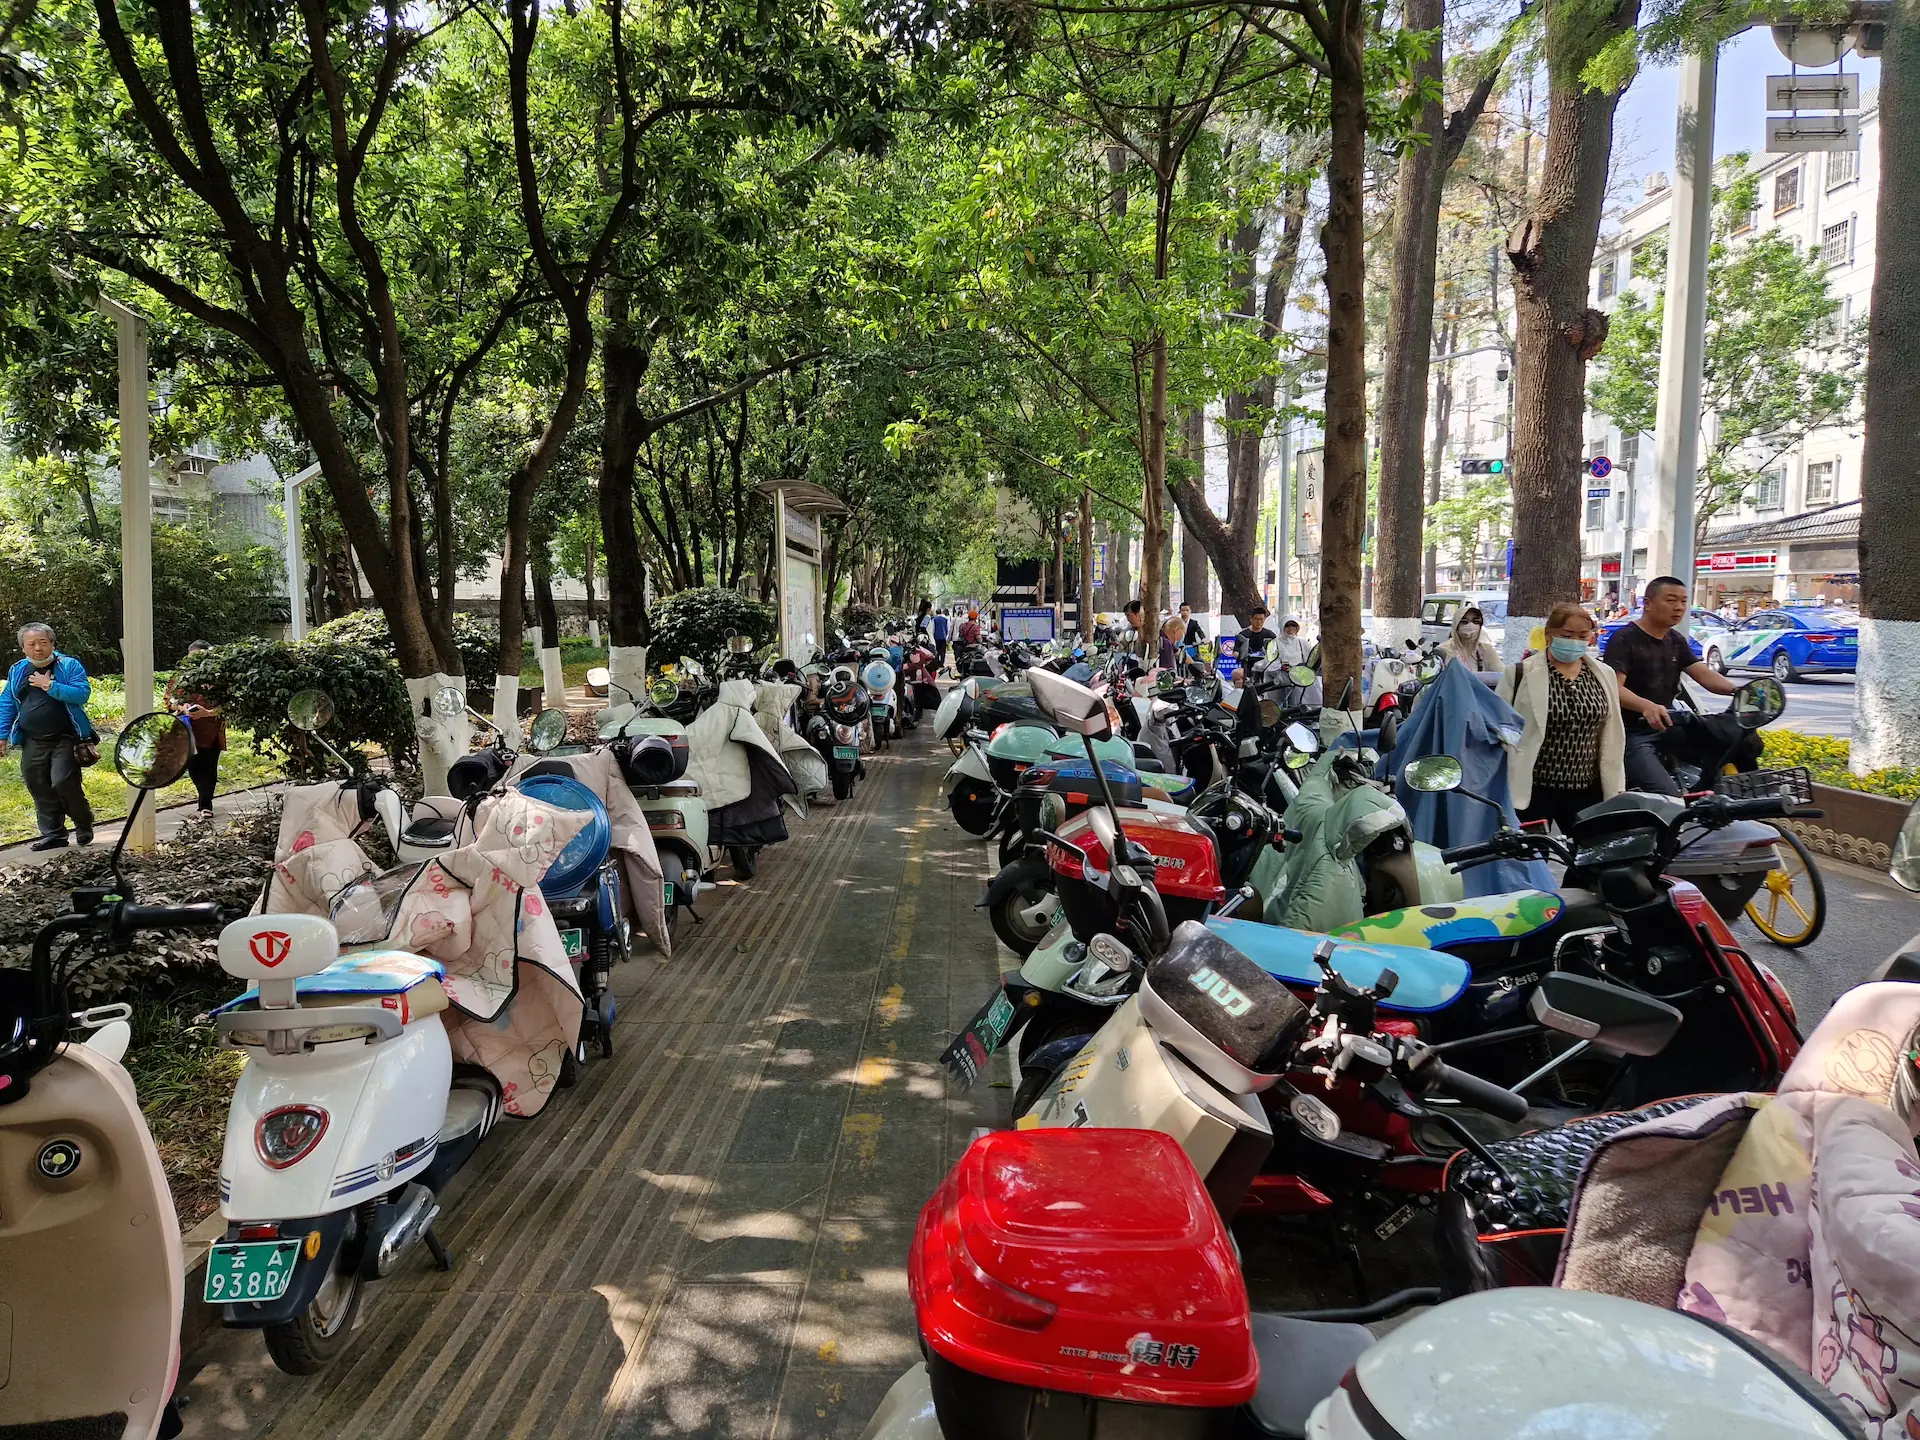 Des motos et scooters sont parquées le long d'un trottoir. On voit quelques piétons forcés de marcher sur la route.